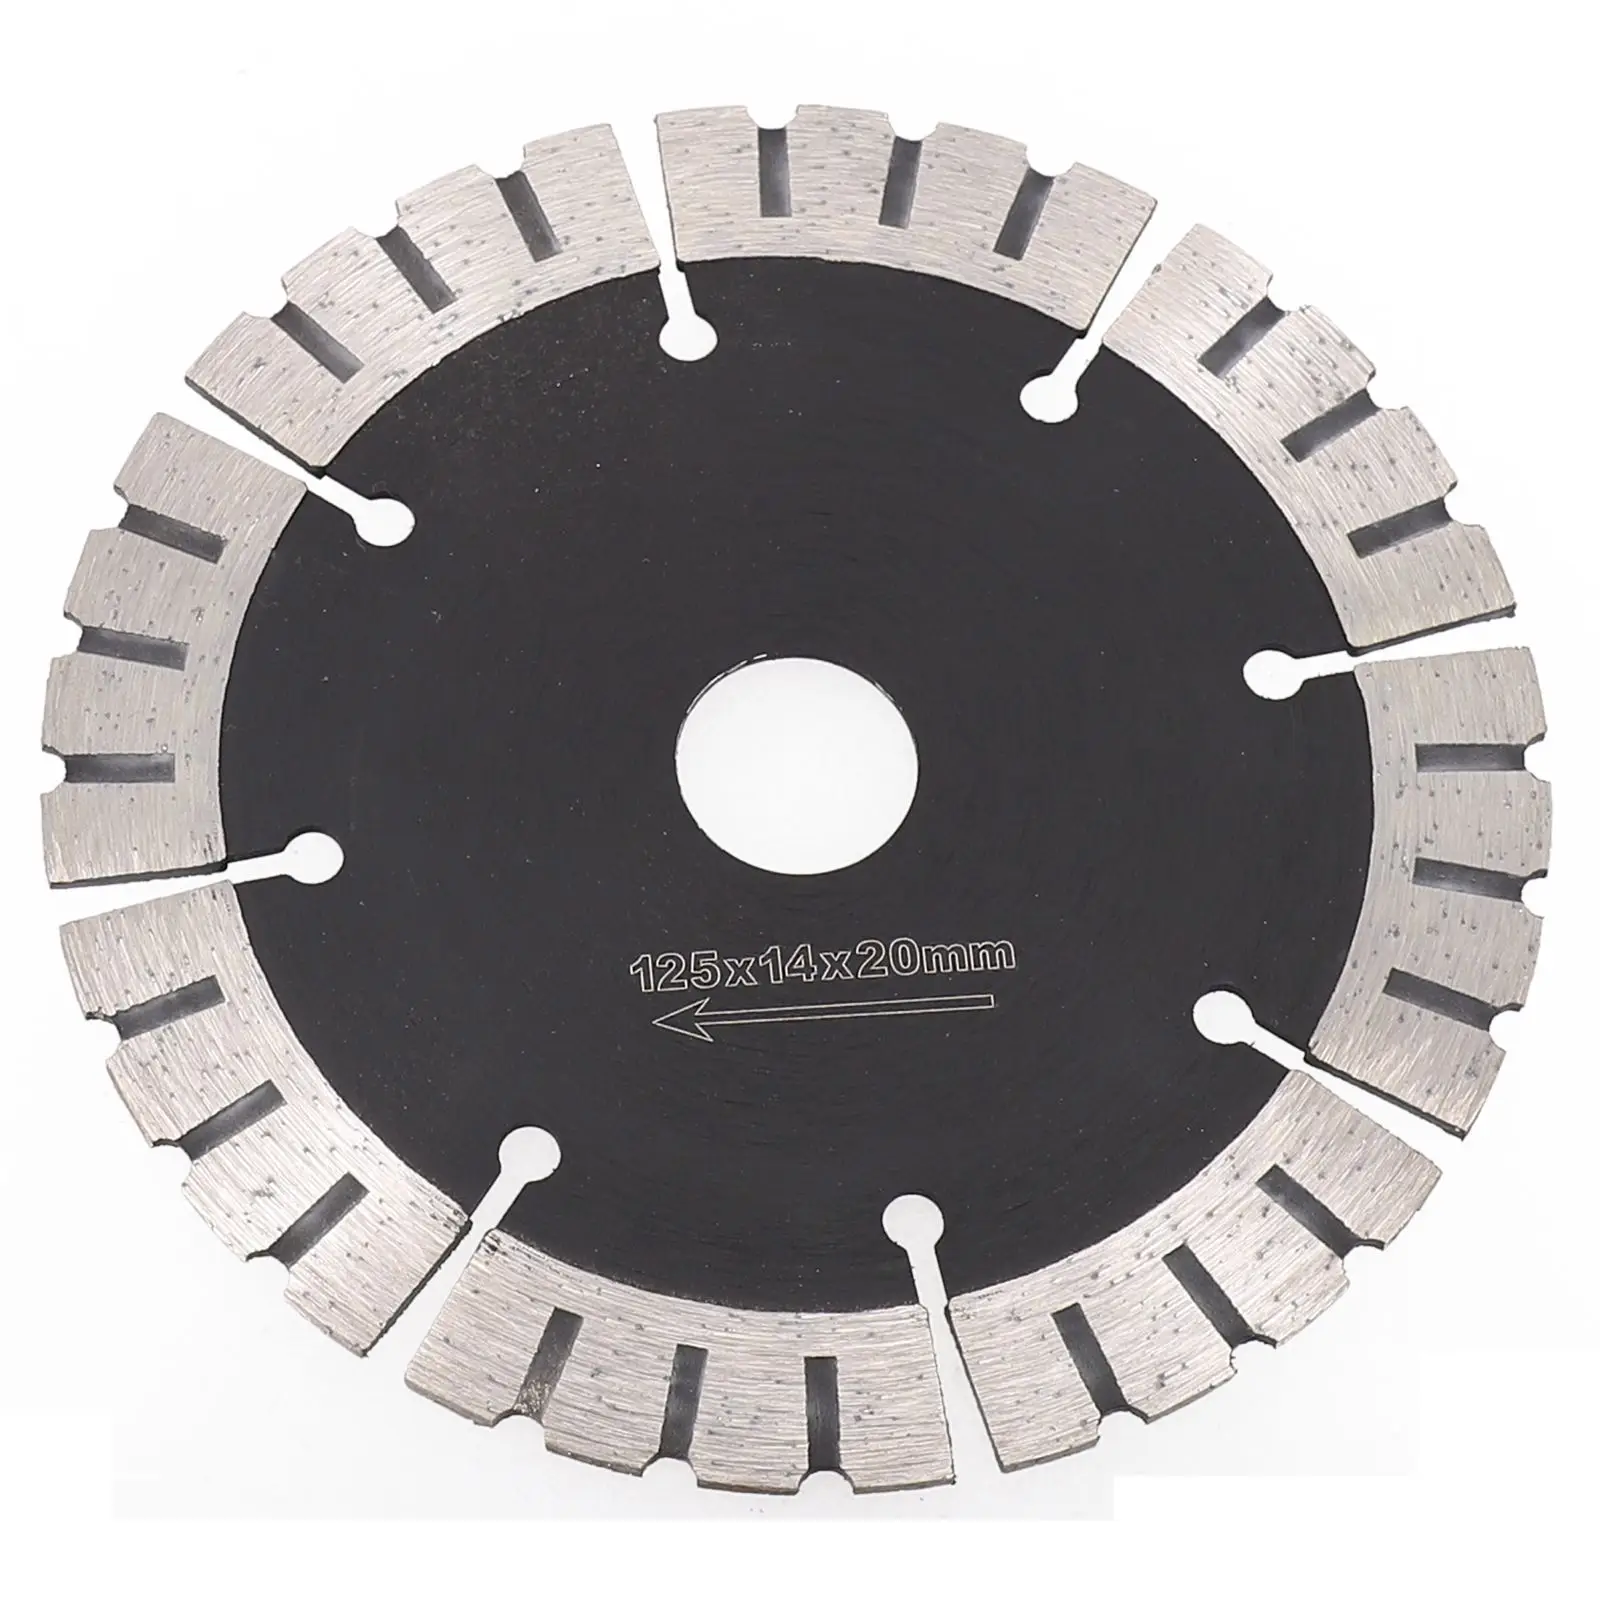 

Режущий диск, Алмазное лезвие для пилы диаметром 125 мм, фитинги, Сменное сегментное лезвие для пилы, 1 шт., 5-дюймовые режущие инструменты 2022